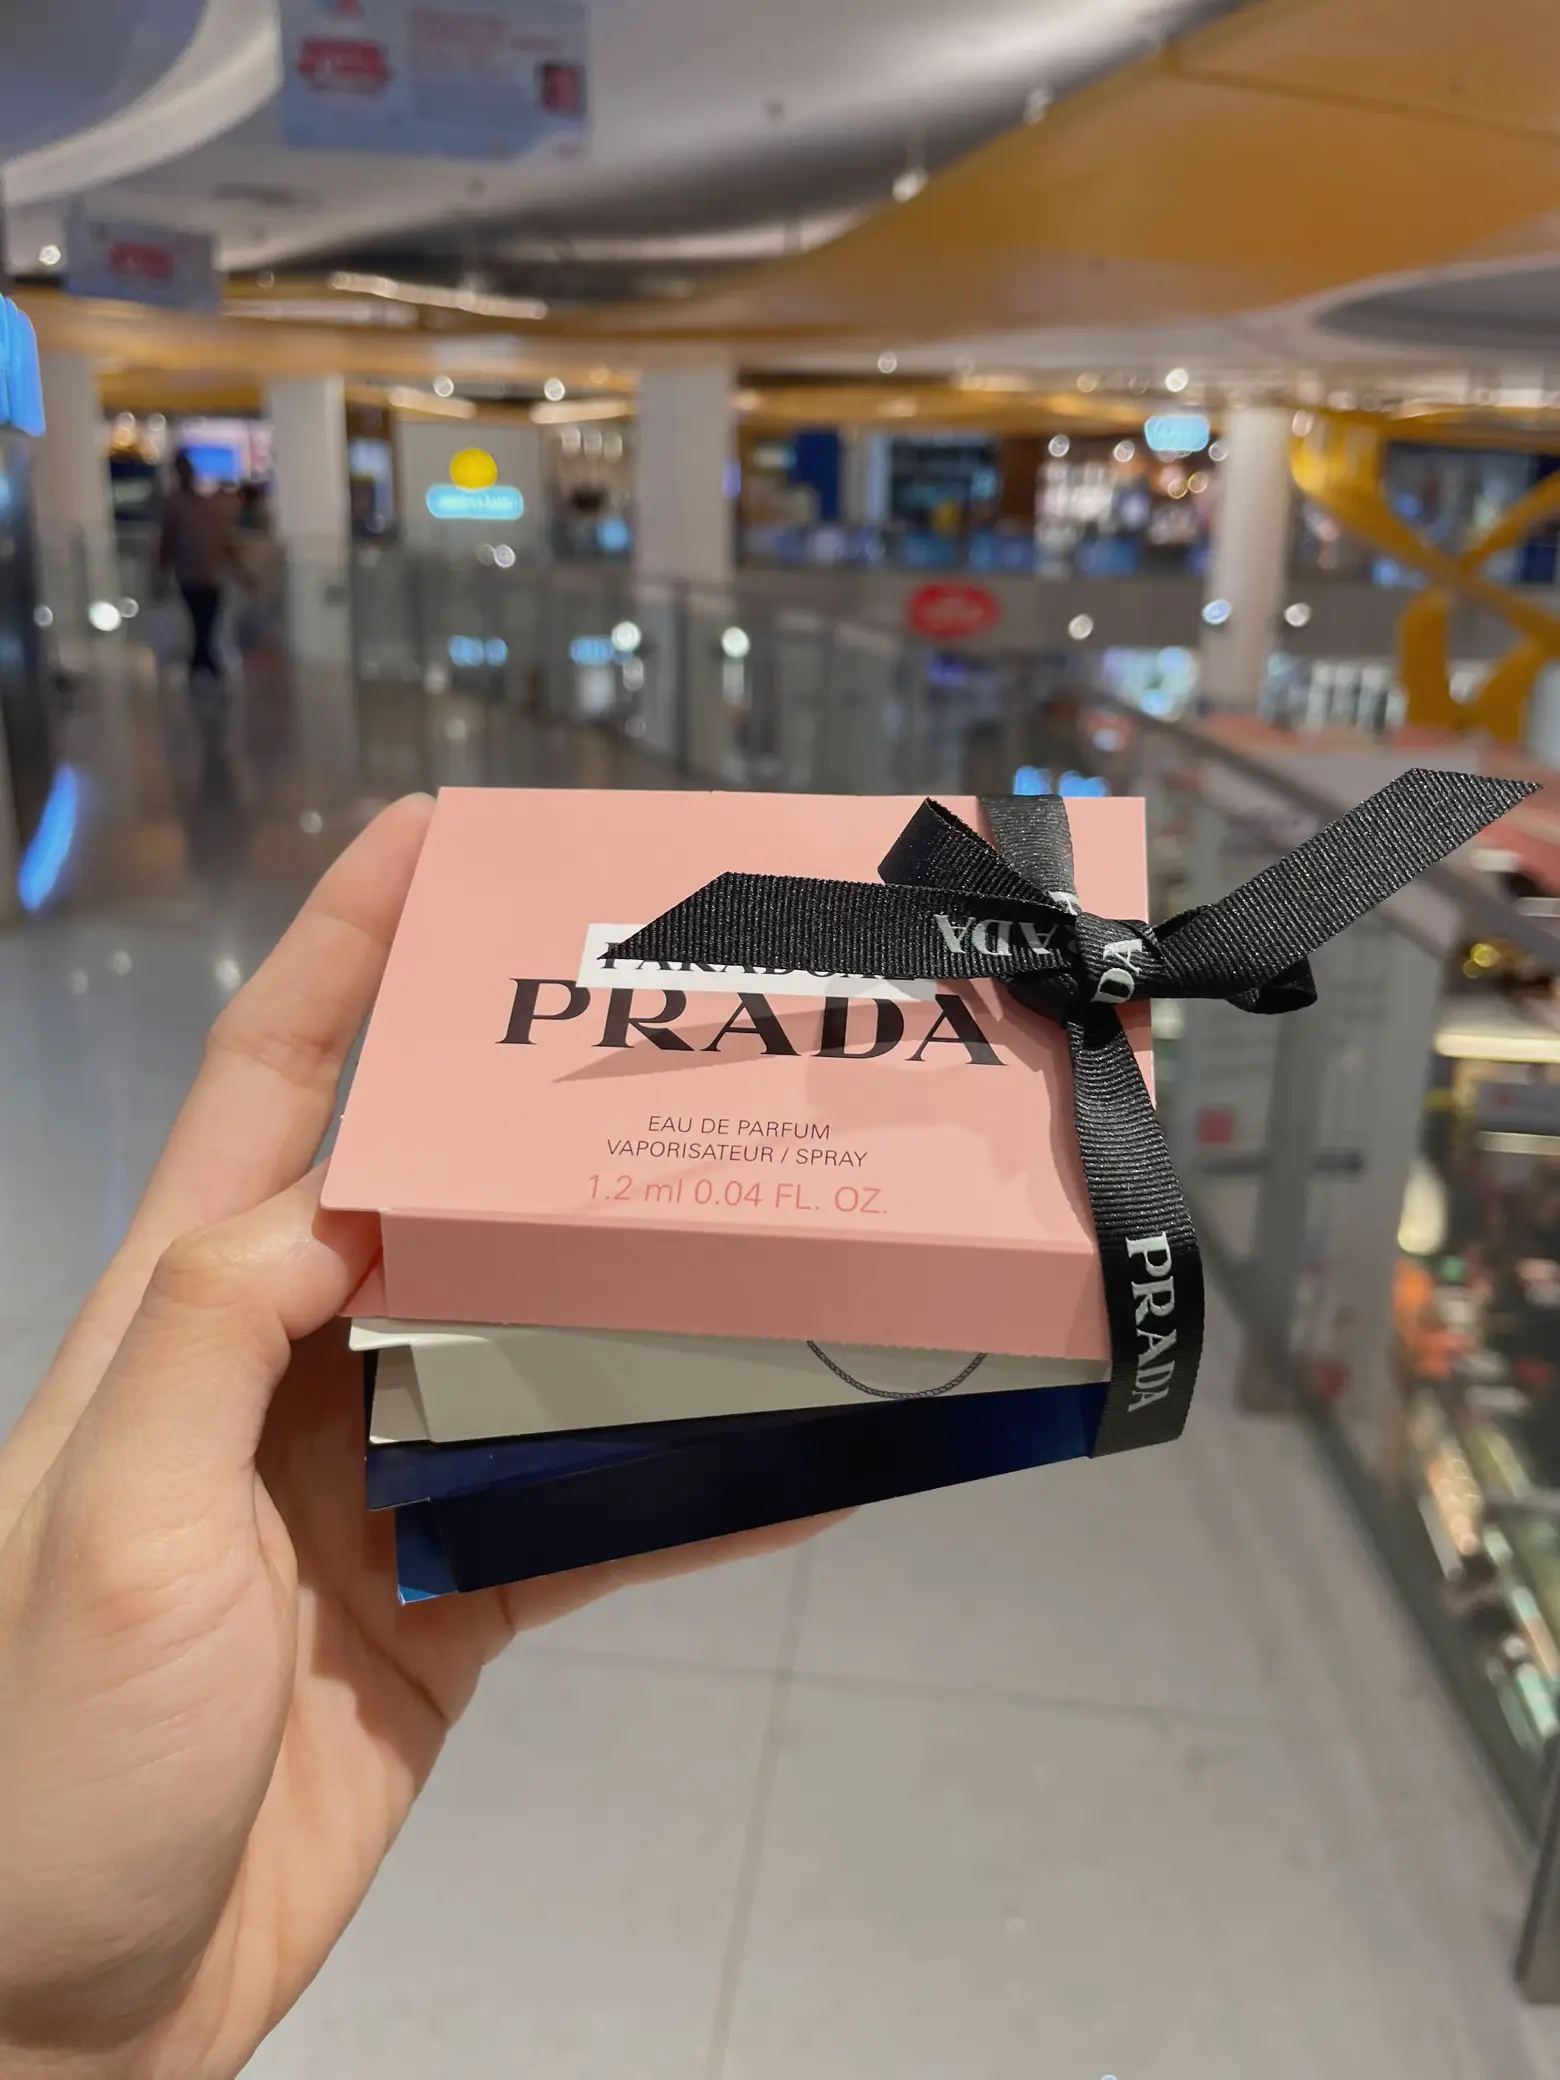 Free 3pc Prada perfume samples 🇸🇬's images(4)